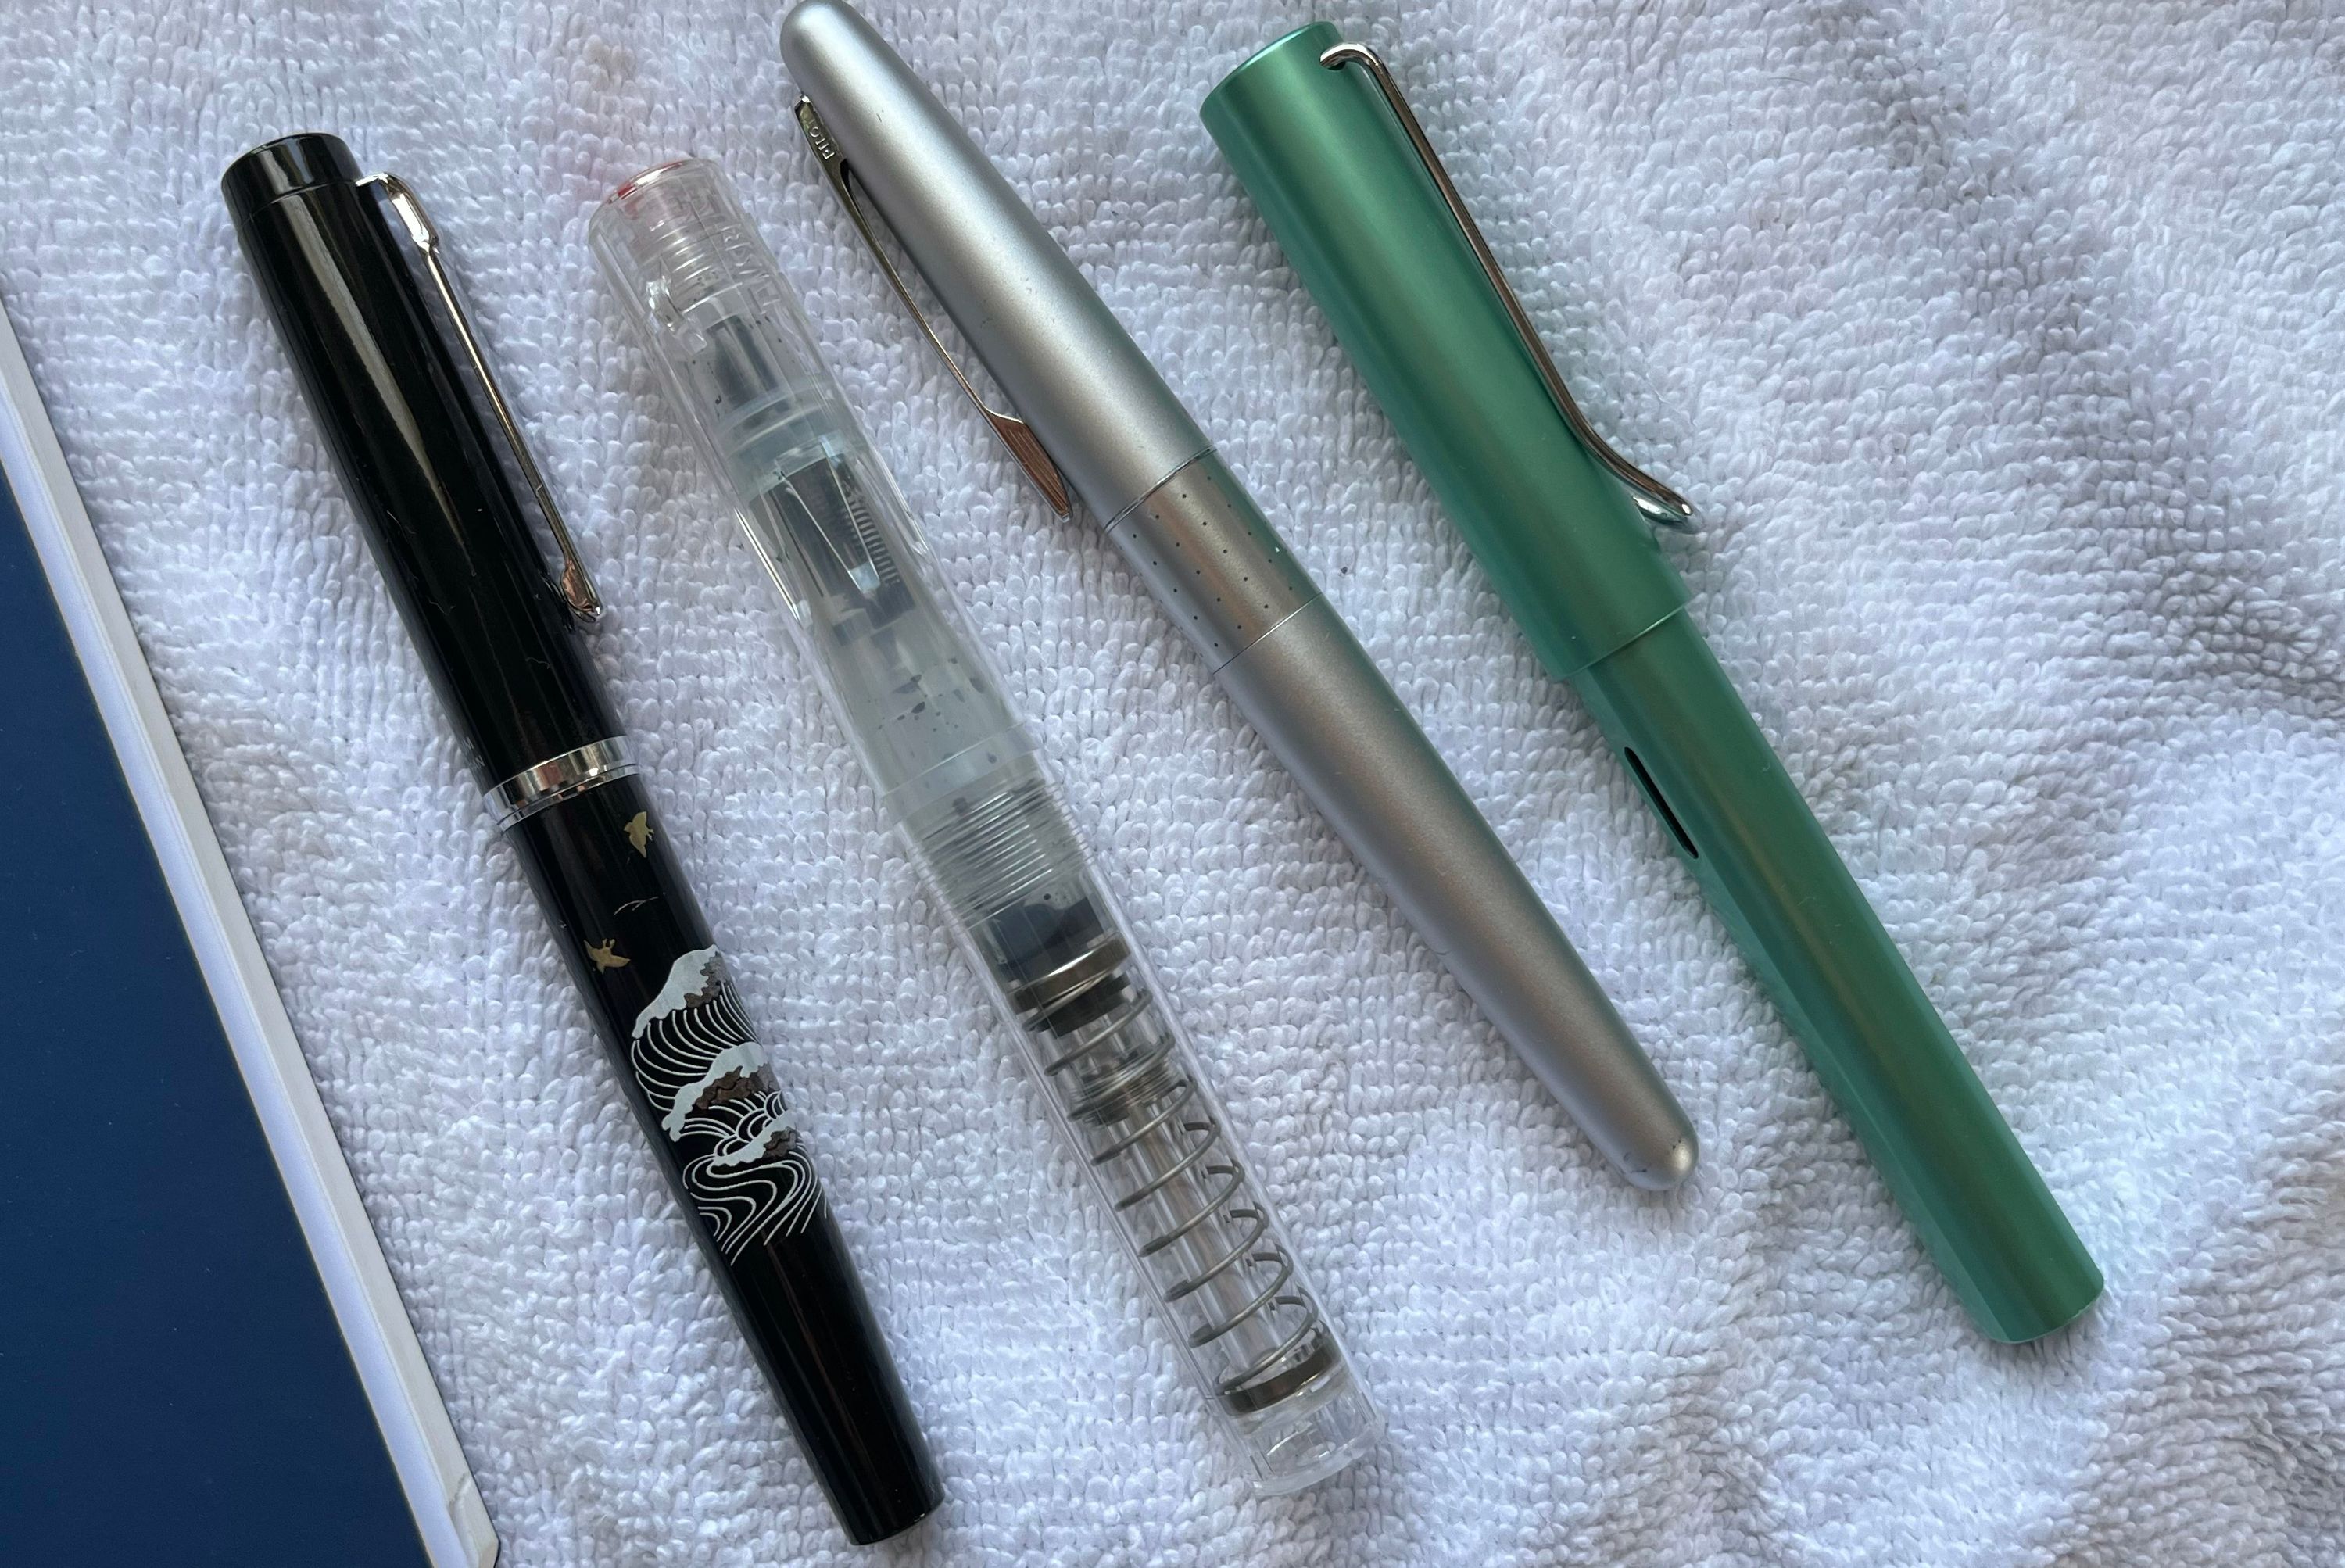 Pens – Platinum Procyon Maki-e Plover on the Wave, Fine Nib; TWSBI GO Clear, Medium Nib; Pilot Metro Silver Dots, Medium Nib; Lamy Safari, Medium Nib